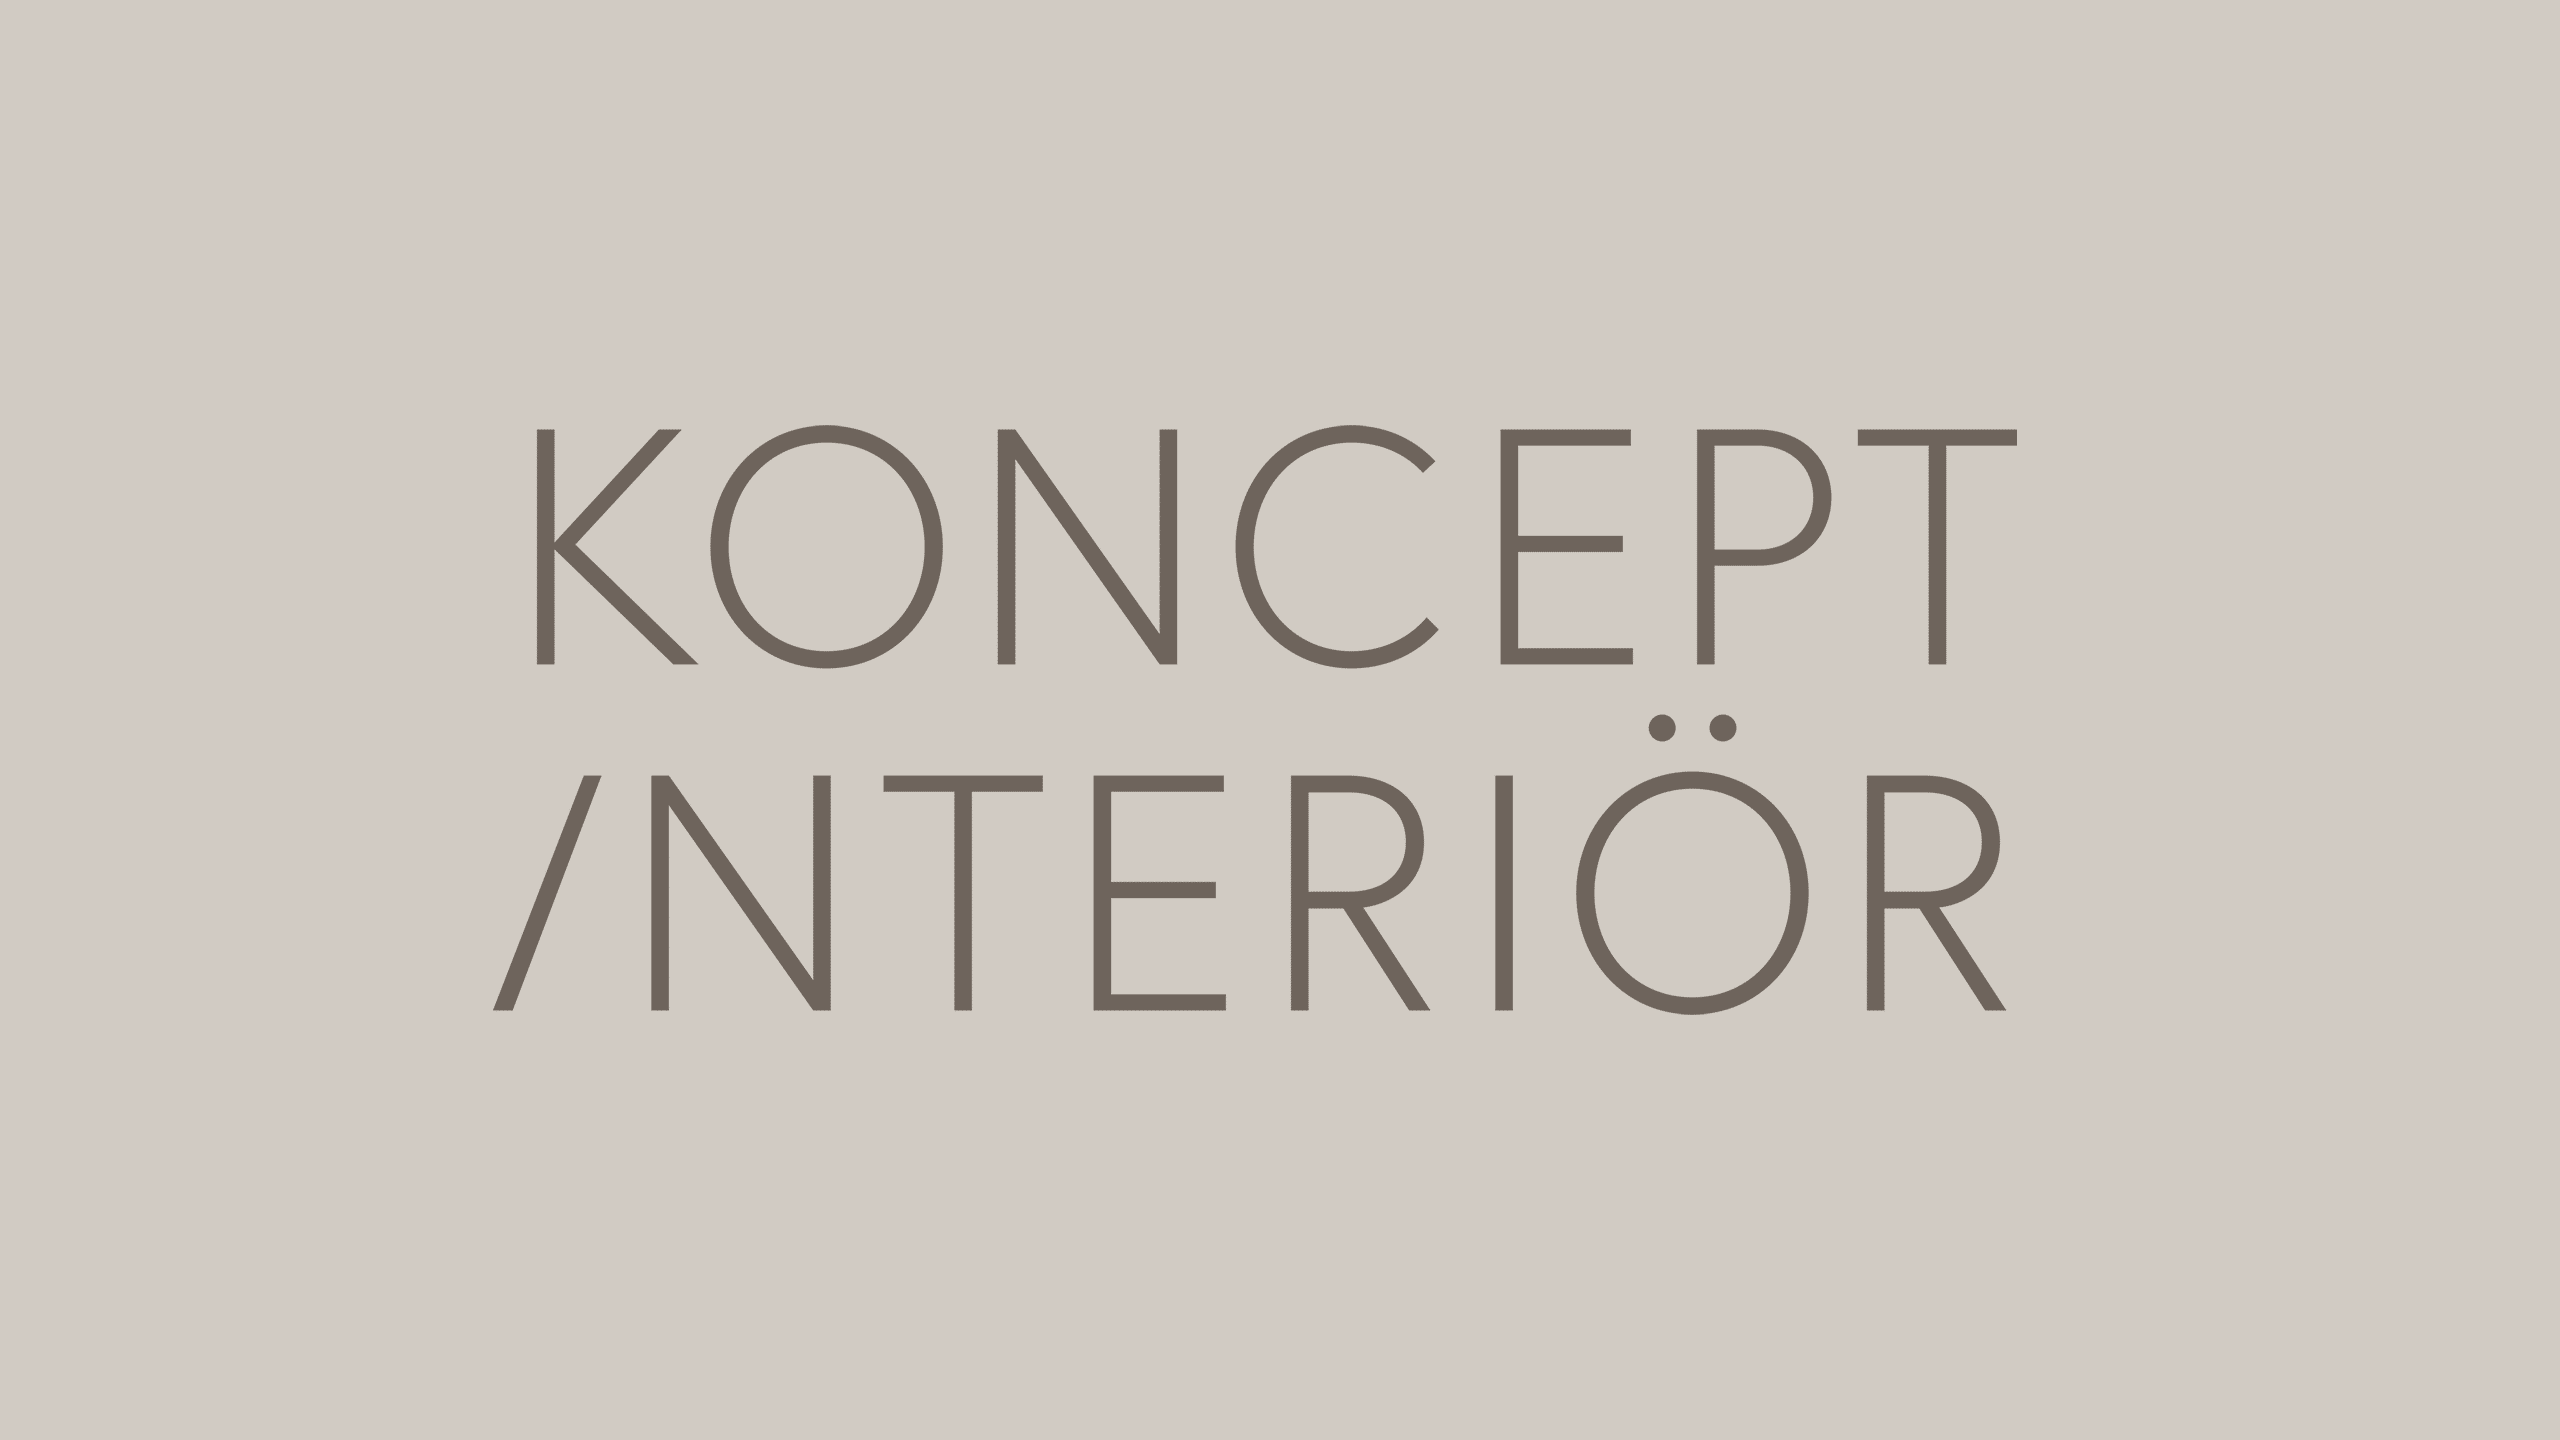 Full logo for Koncept Interiör